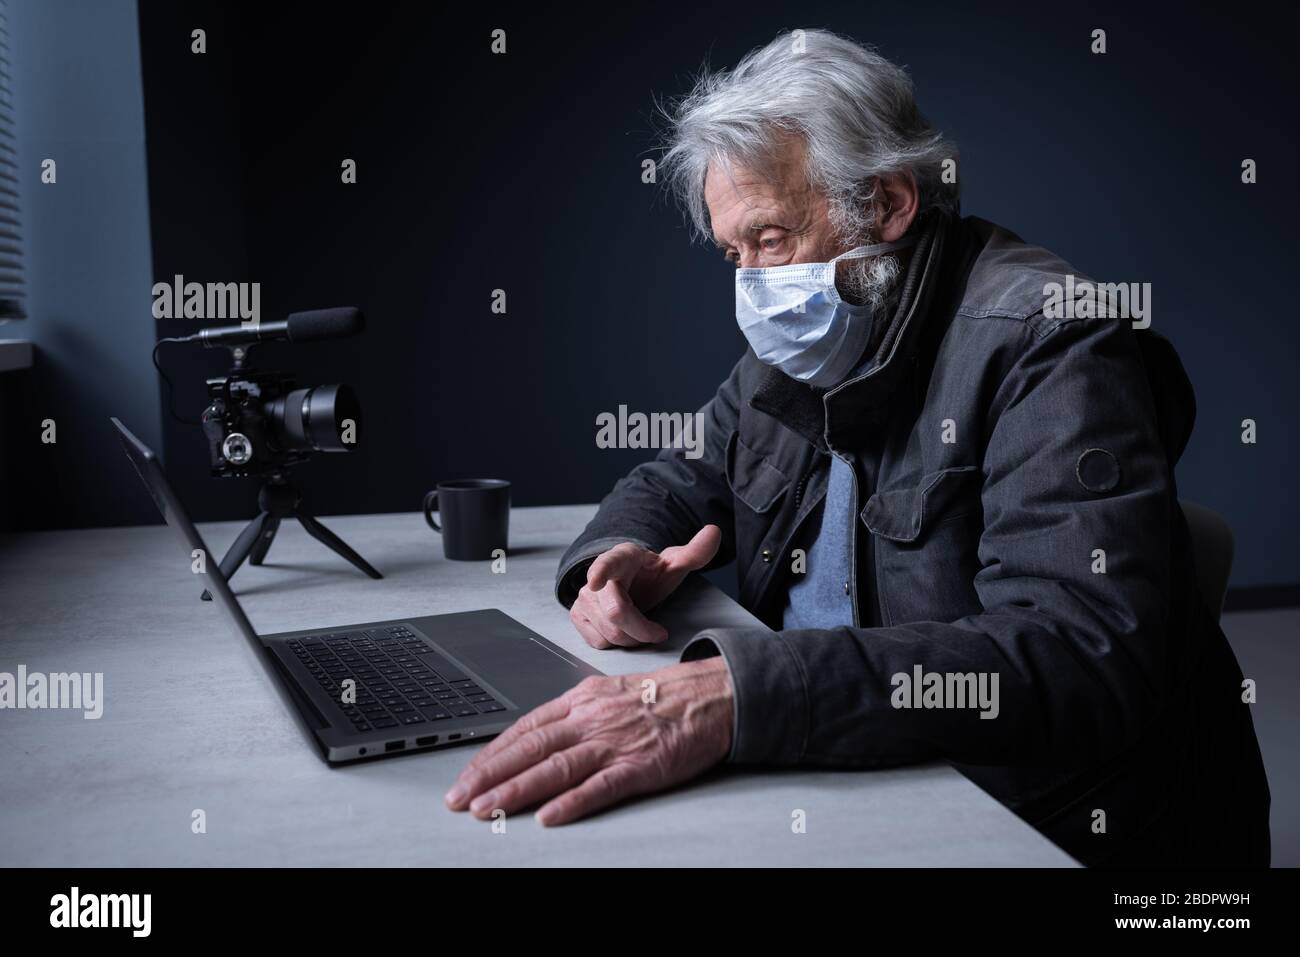 Homme senior assis au bureau et portant un masque chirurgical, il se connecte à son ordinateur portable et diffuse une vidéo en ligne sur son canal, covid-19 virus o Banque D'Images